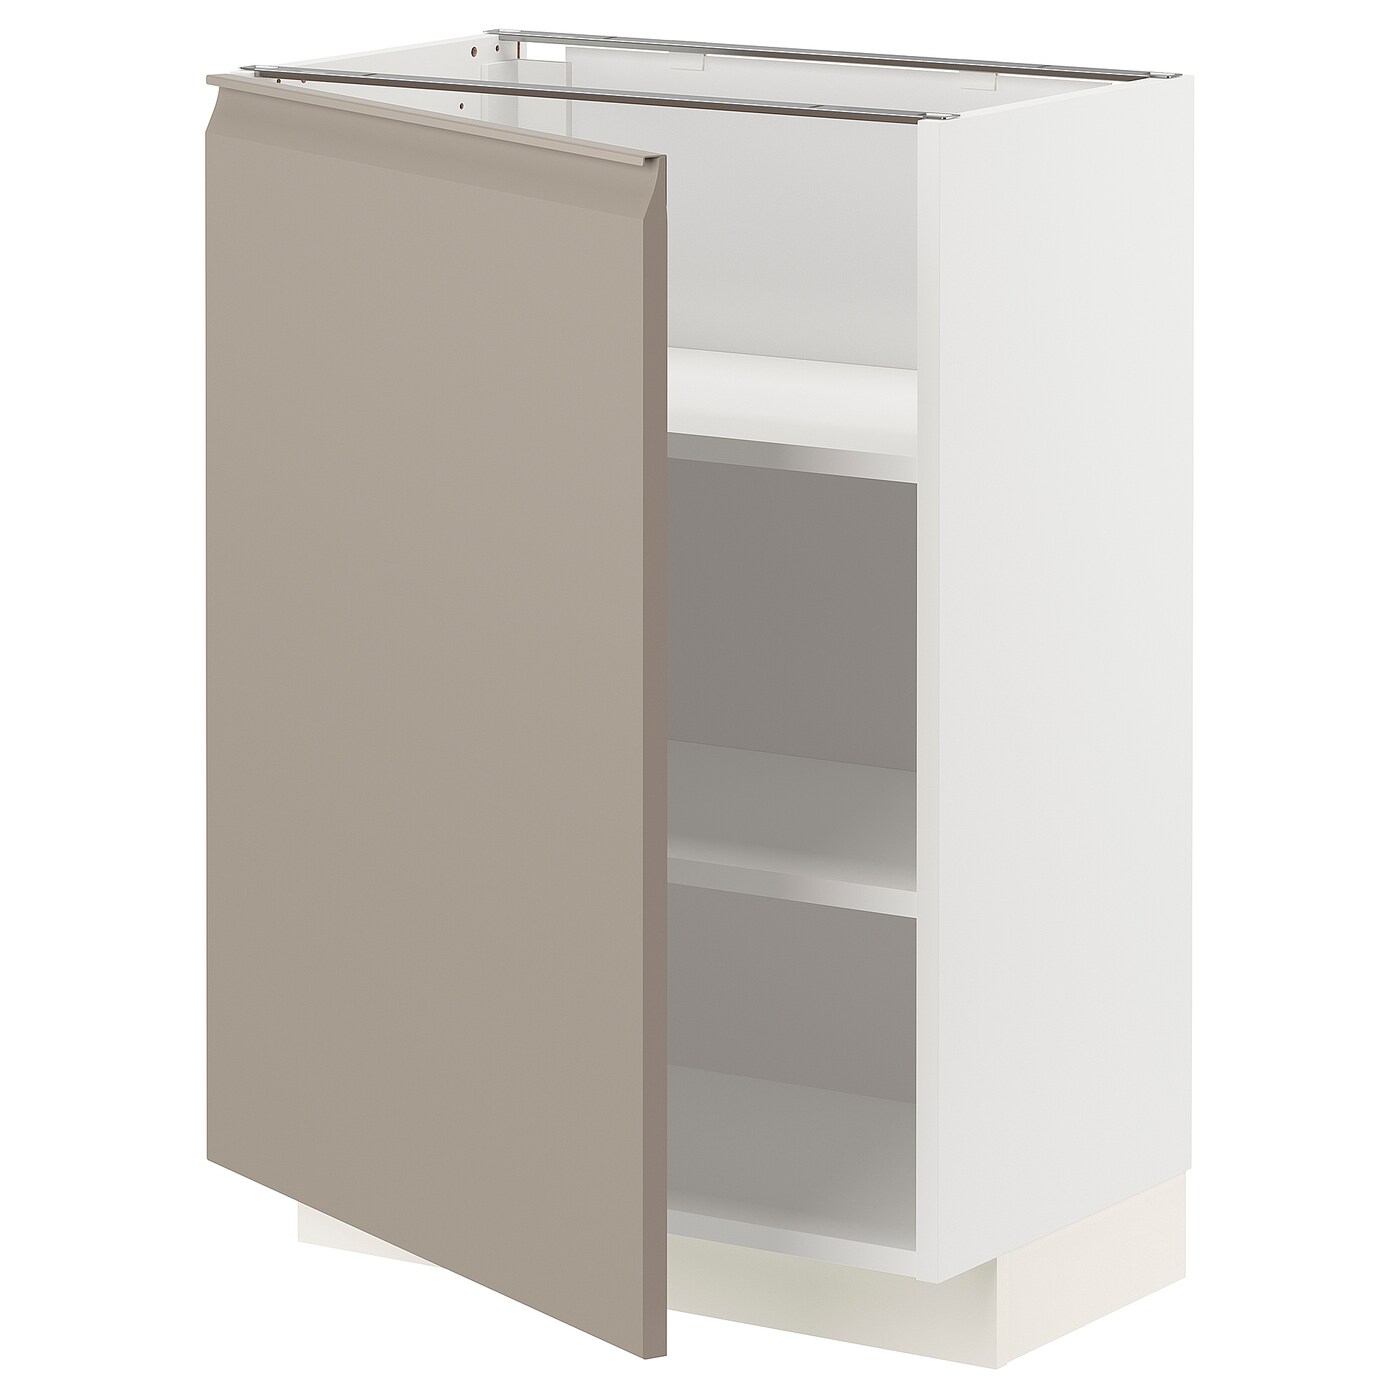 Напольный шкаф - IKEA METOD, 88x39x60см, белый/темно-бежевый, МЕТОД ИКЕА